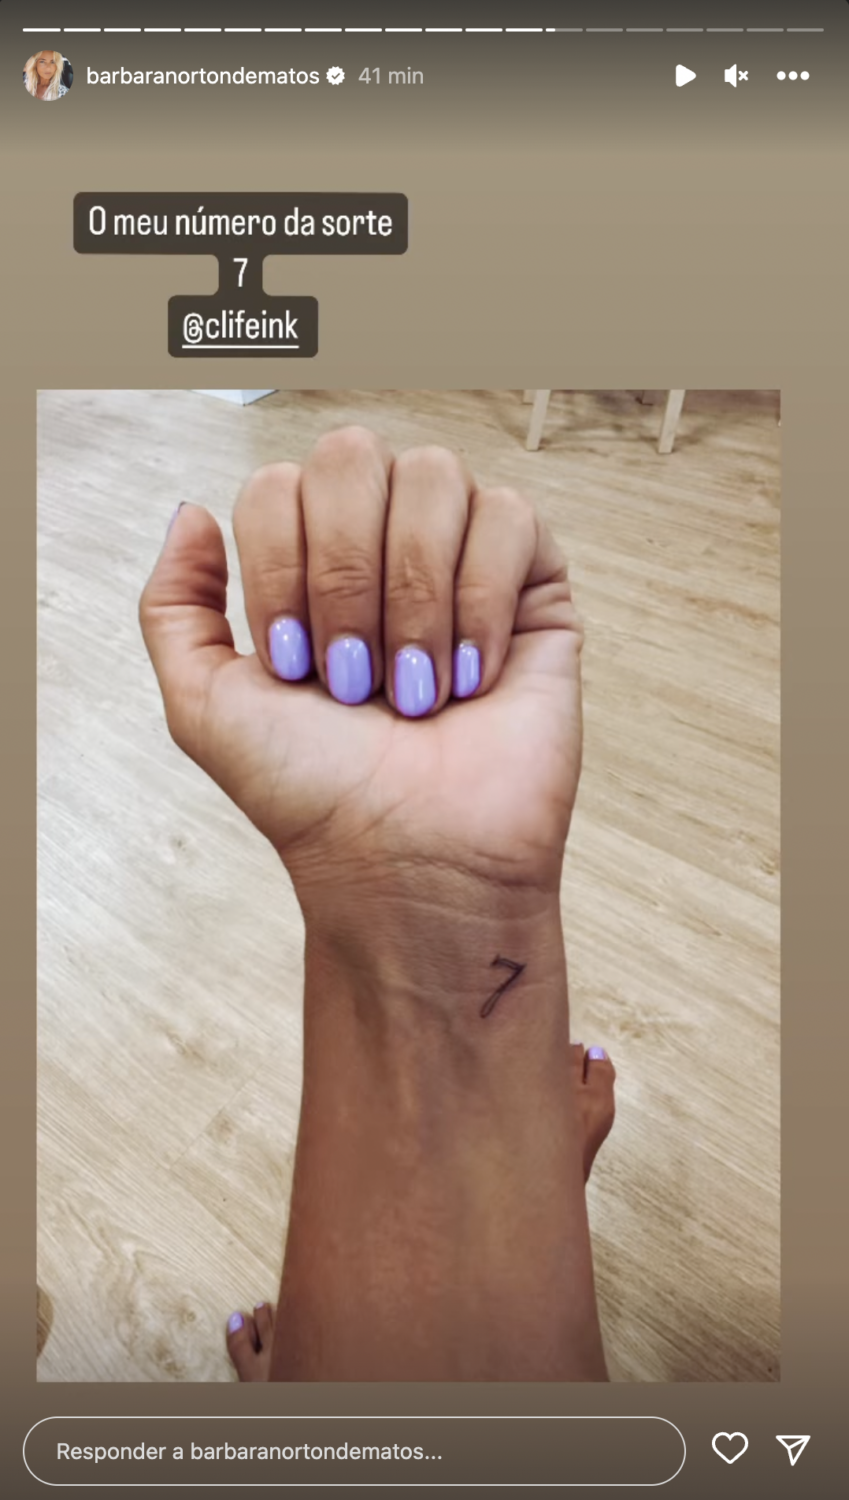 Bárbara Norton de Matos faz 4 tatuagens e mostra resultado: &#8220;Deu-me para isto&#8230;&#8221;